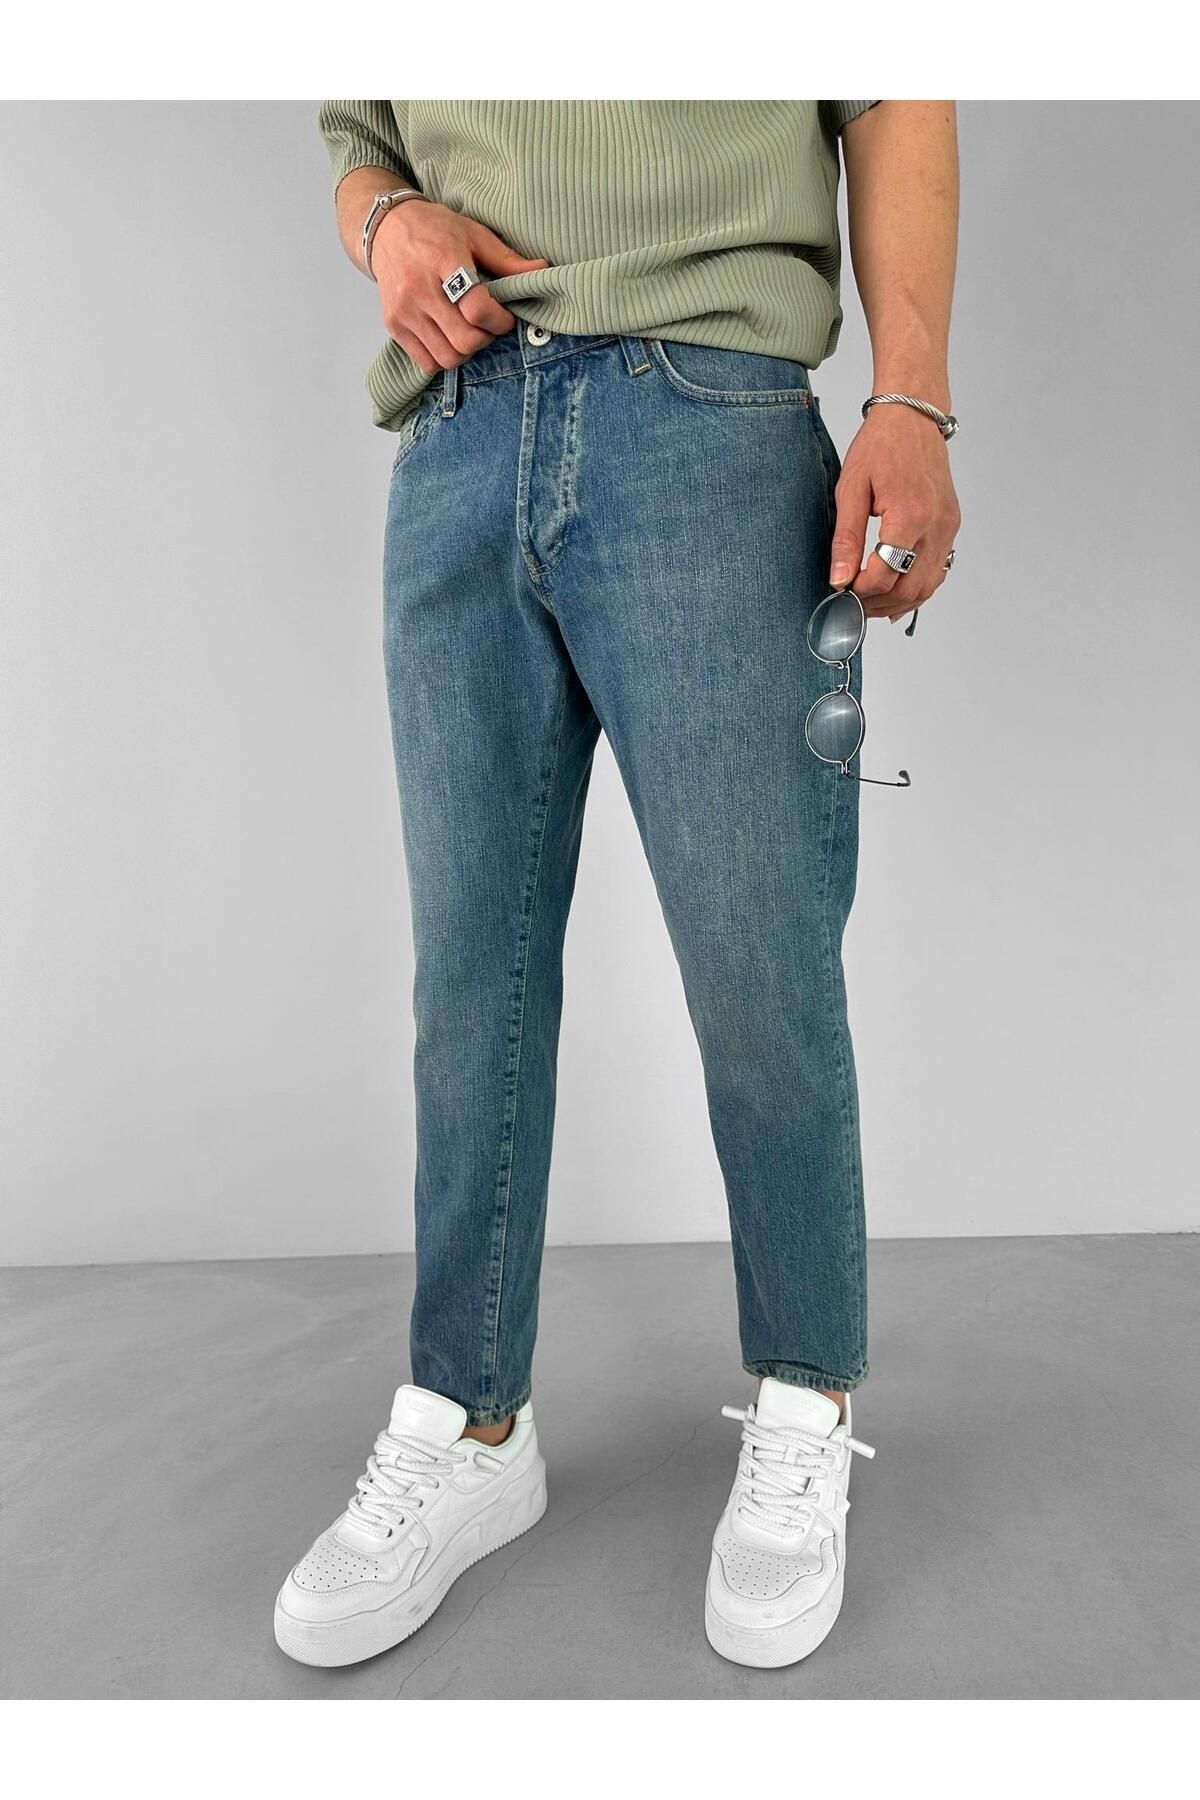 ablikaonline Комфортные моющиеся джинсовые брюки свободного покроя, синие JEN.0057